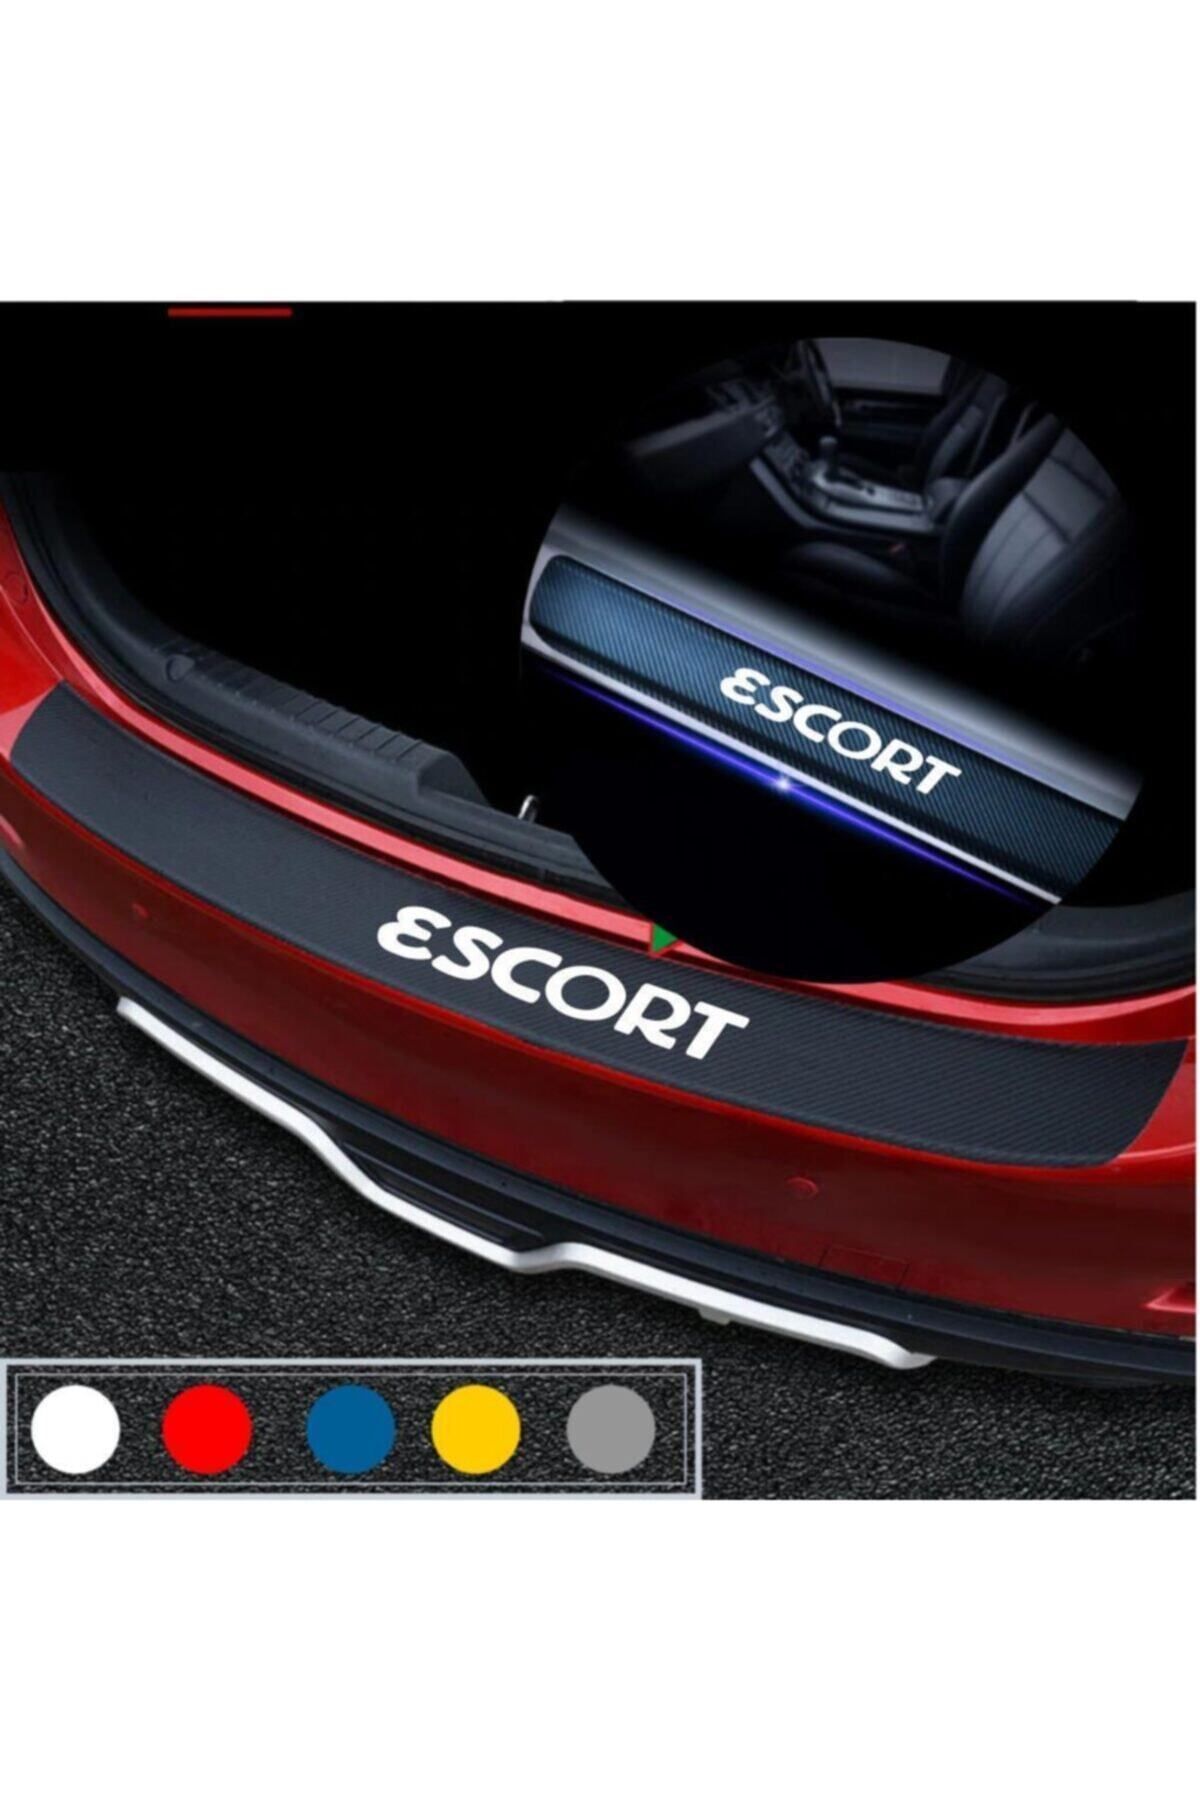 ASİL TİCARET Ford Escort İçin özel yeni uyumlu Aksesuar Oto Bagaj Ve Kapı Eşiği özel yeni sticker Seti Karbon